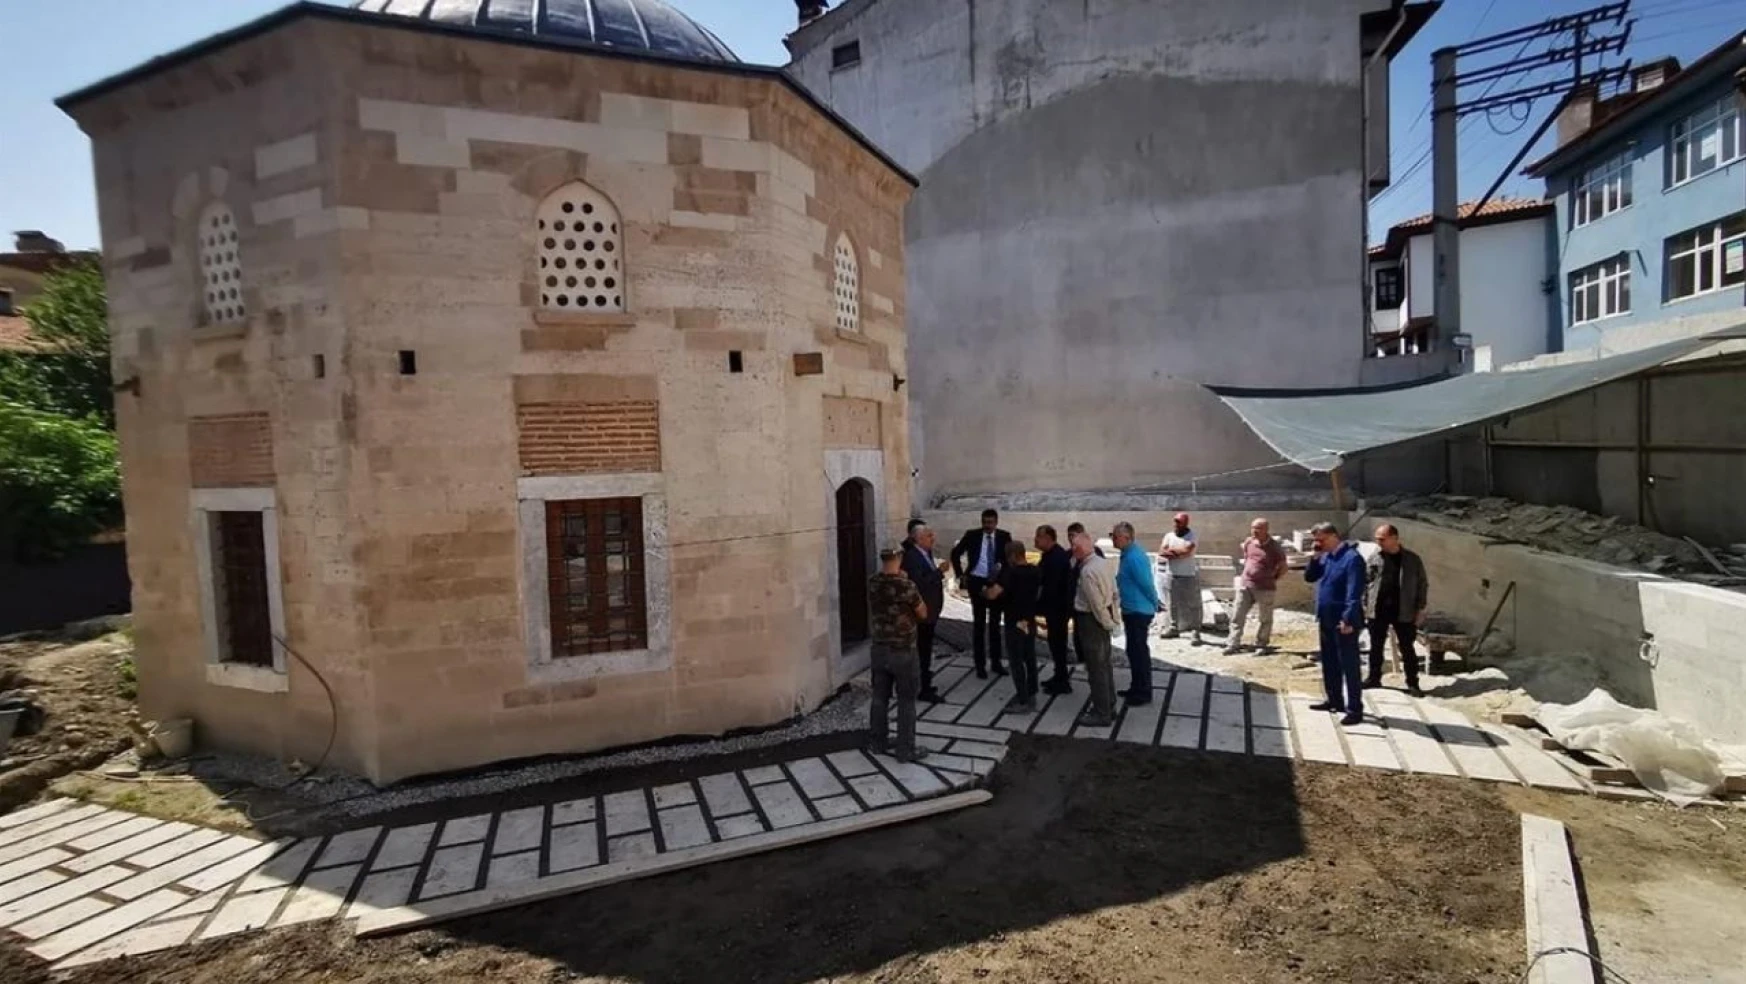 Kütahya Cafer Paşa Dârülkurrâsı'nda çalışmalar devam ediyor